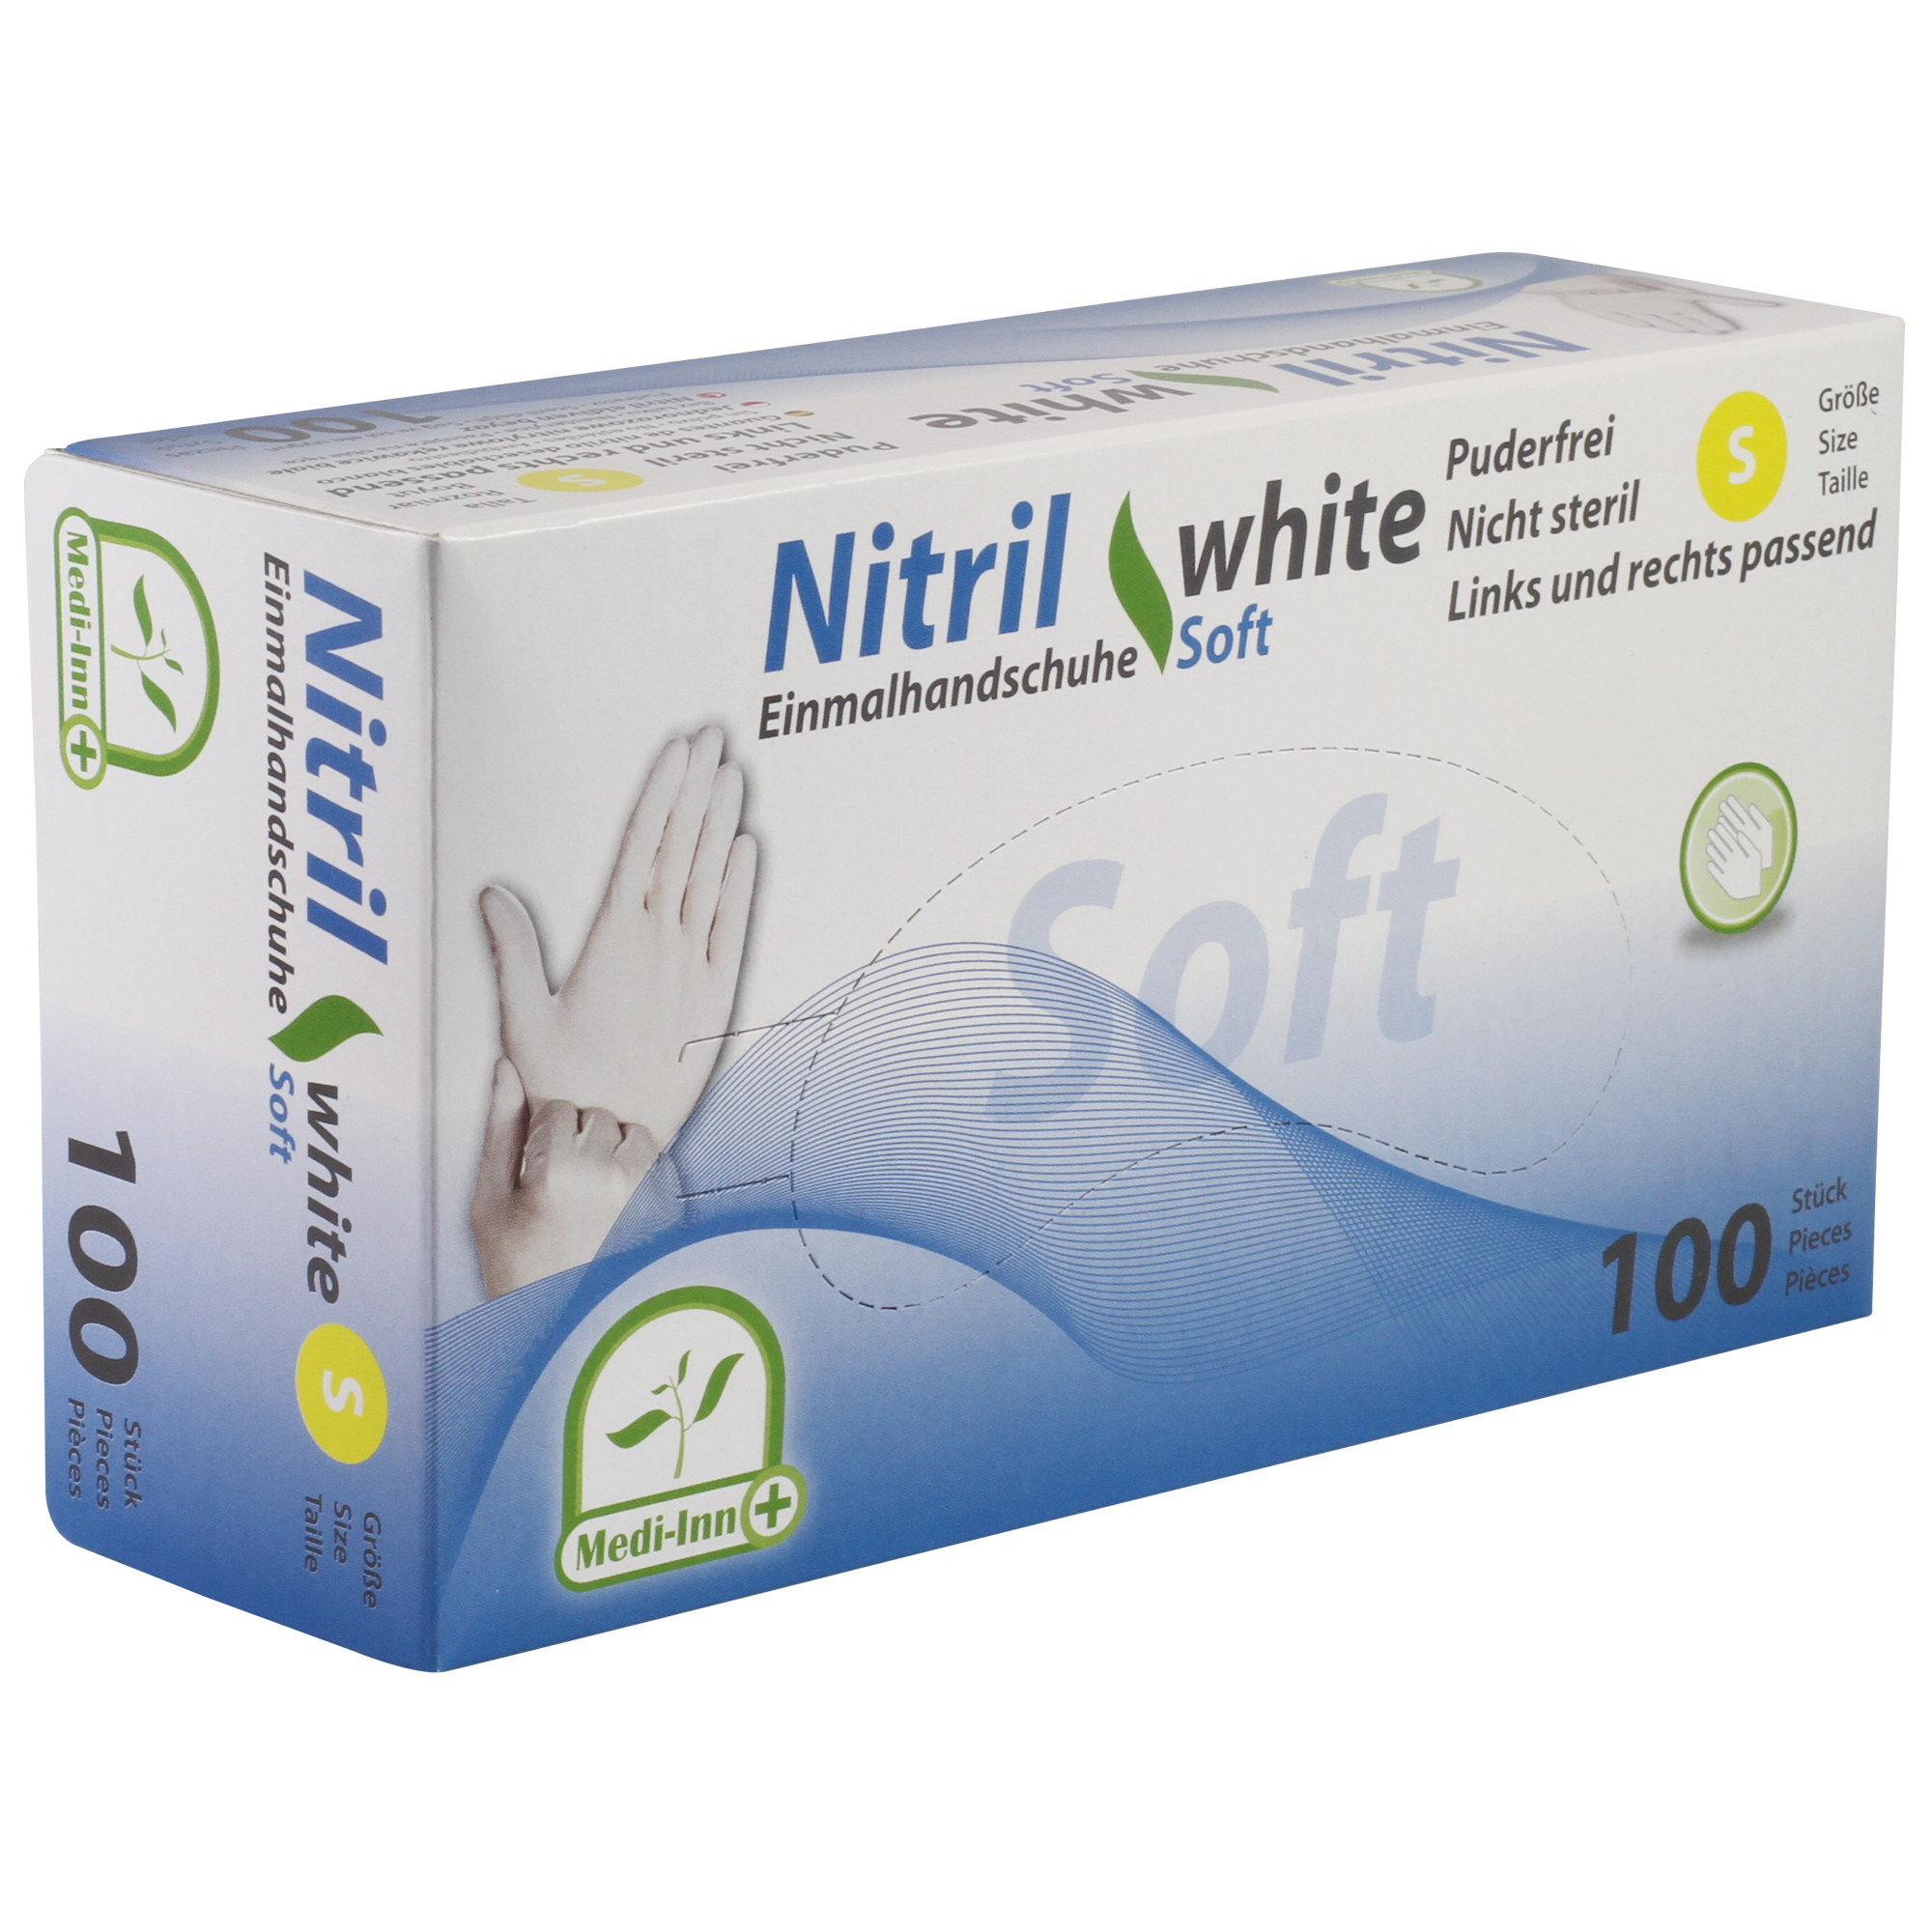 Medi-Inn Nitril Einmalhandschuhe white soft